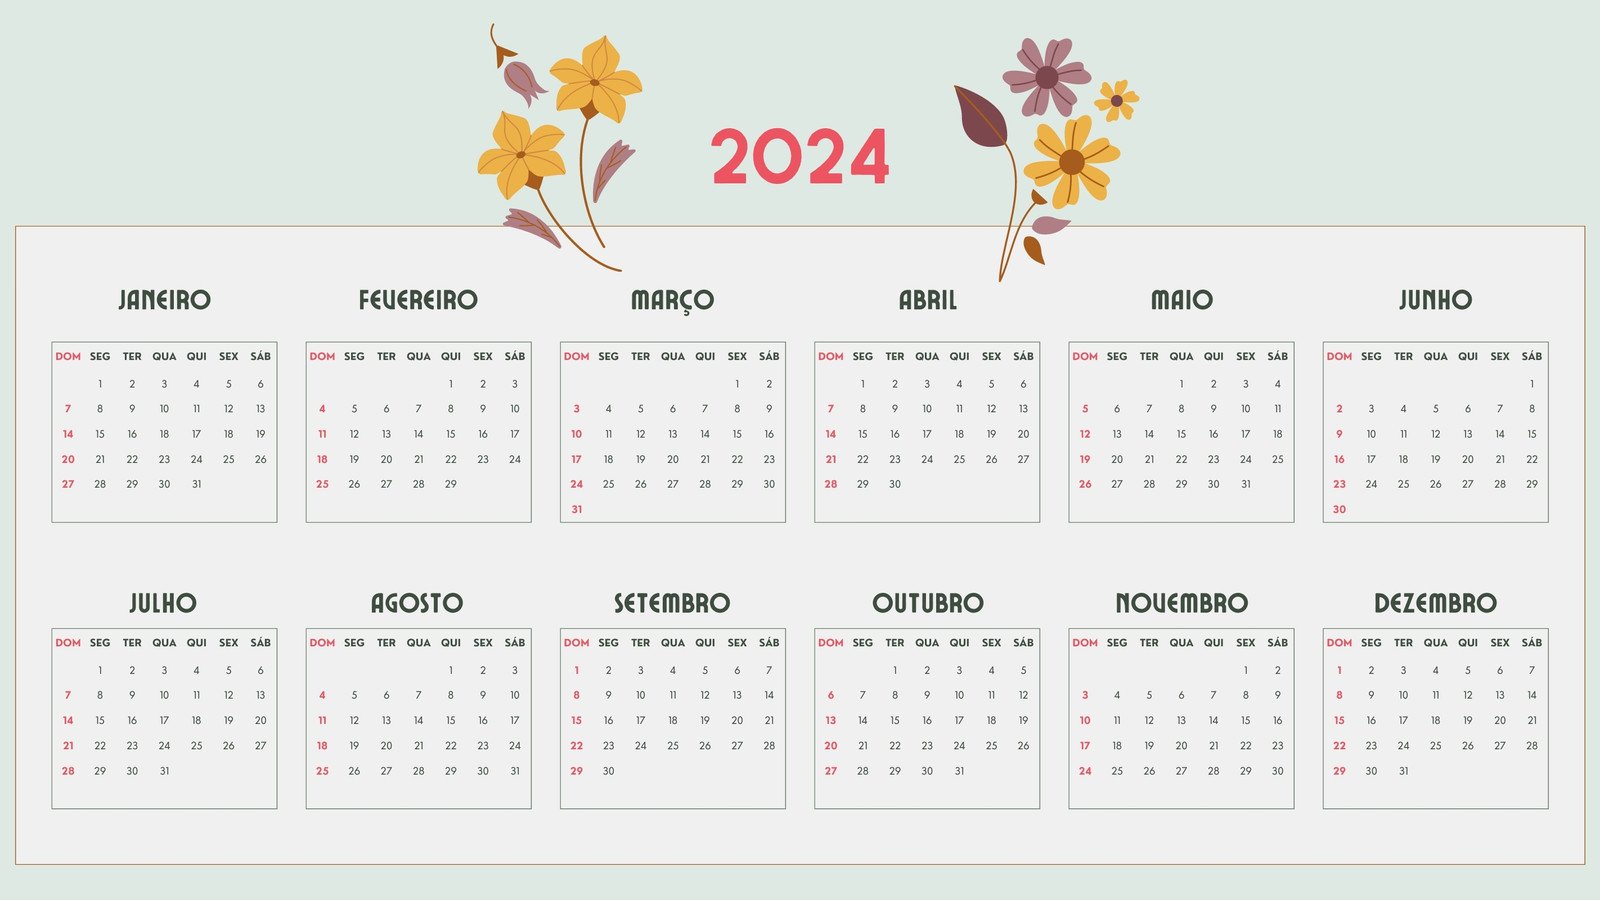 Calendário 2024 com feriados para imprimir: veja como baixar no Canva